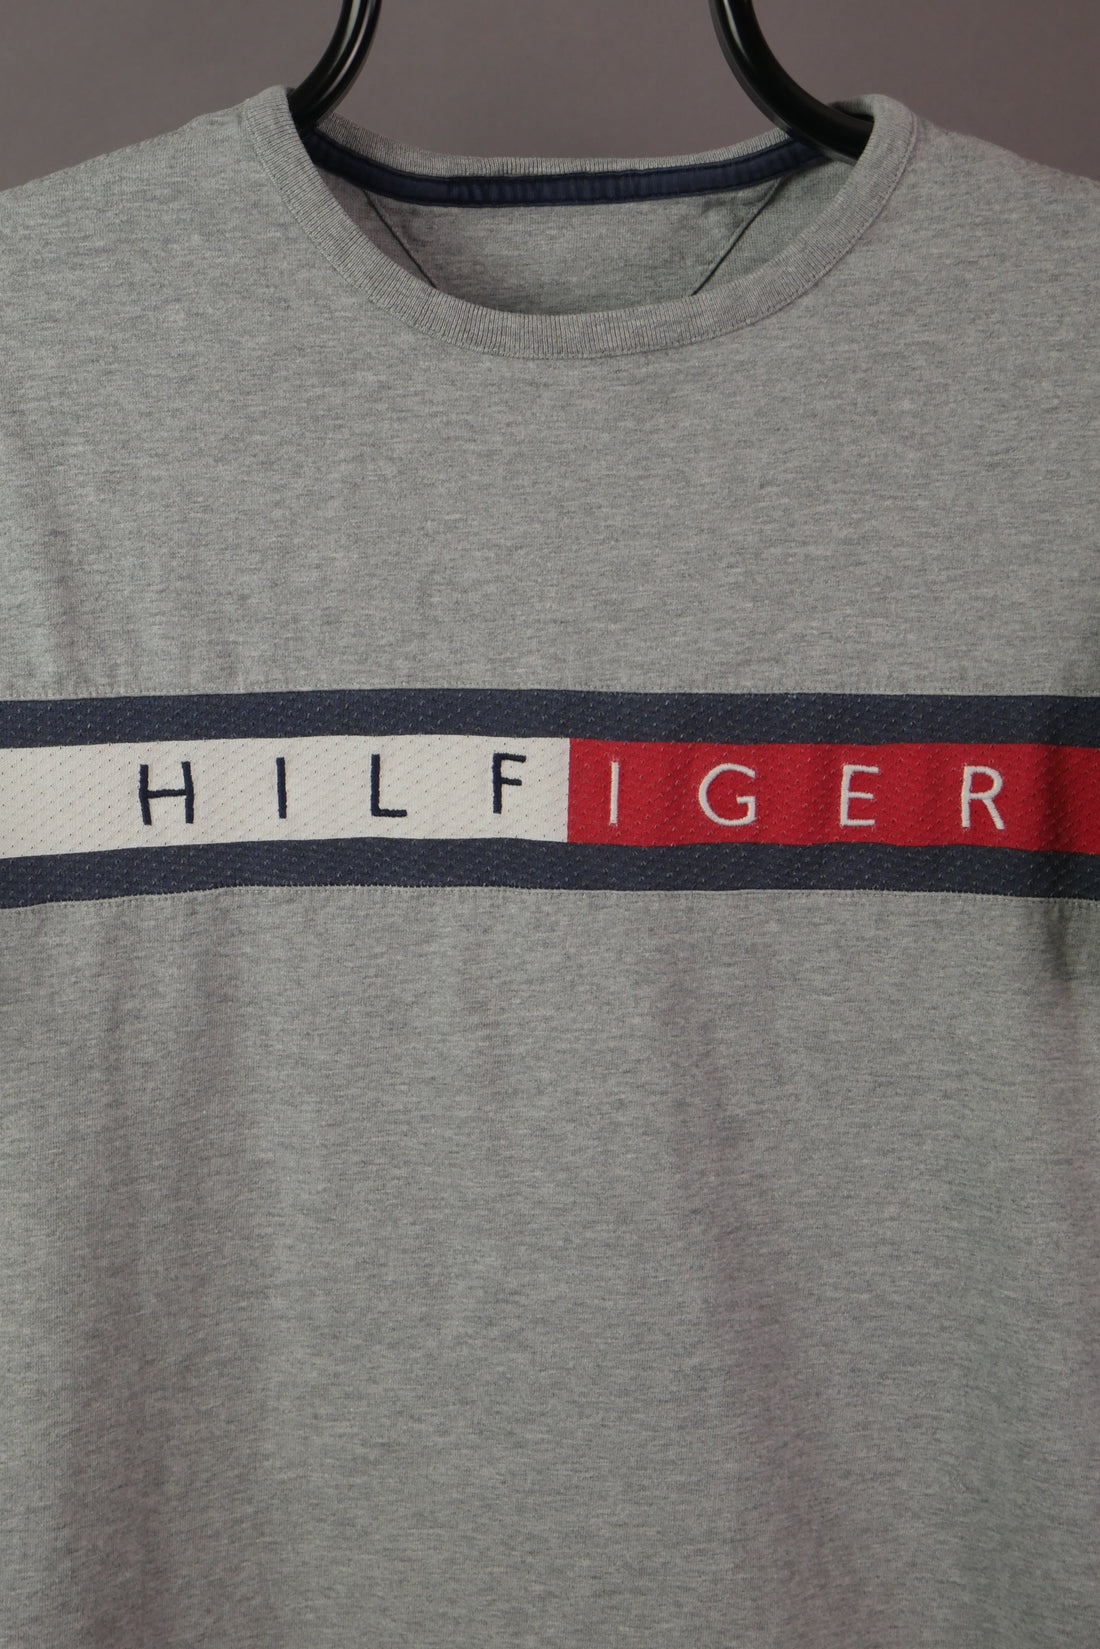 The Bootleg Hilfiger Spell Out T-Shirt (Women's S)